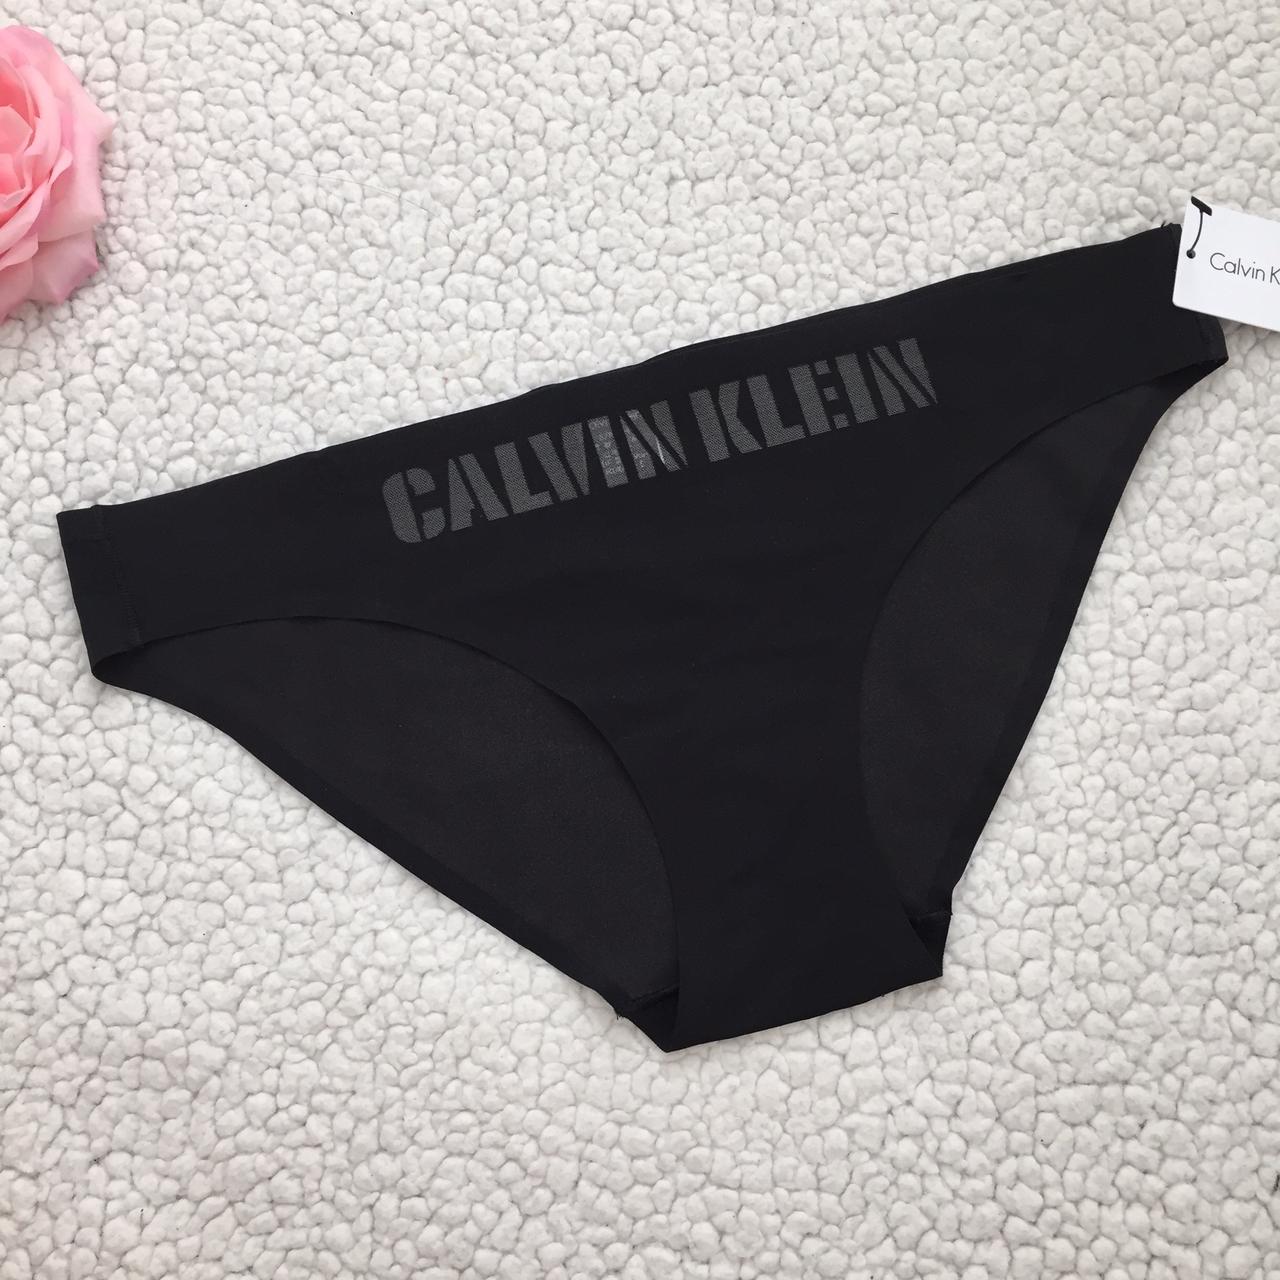 Brand new bikini style calvin klein underwear - Depop